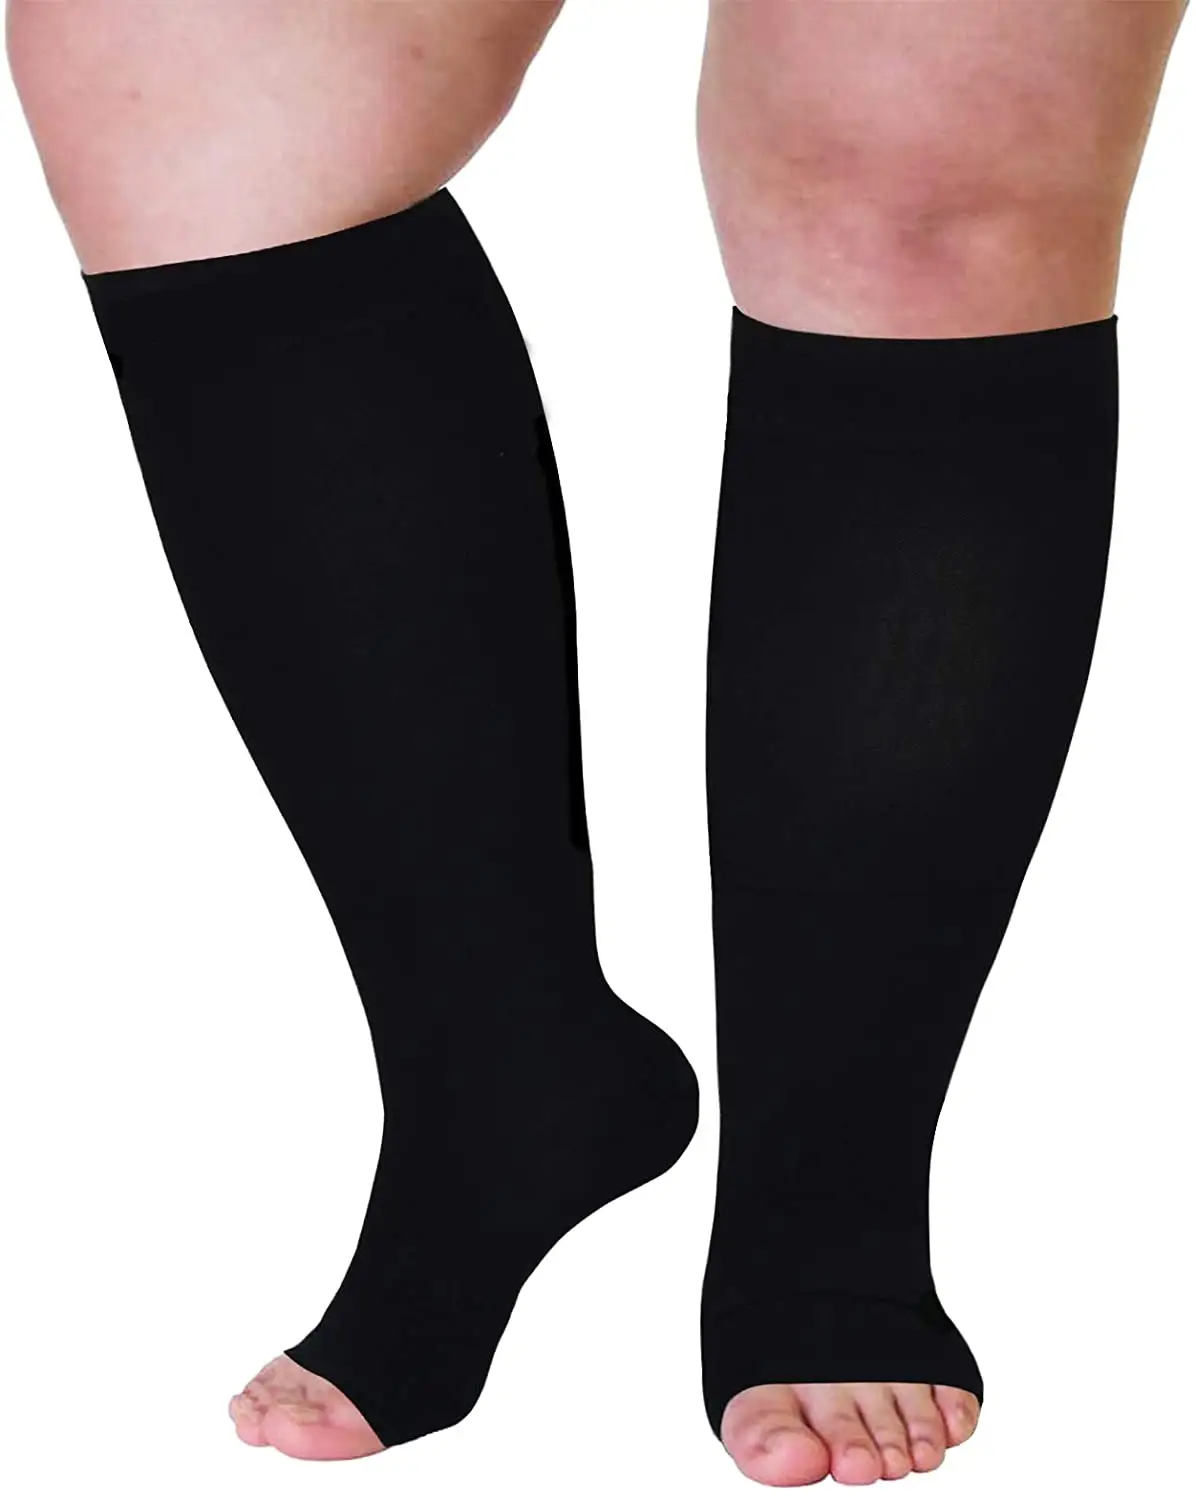 Calze a compressione in vitello nero 23-32mmHg Open Toe Wide Plus Size per gambe lunghe a compressione a circolazione